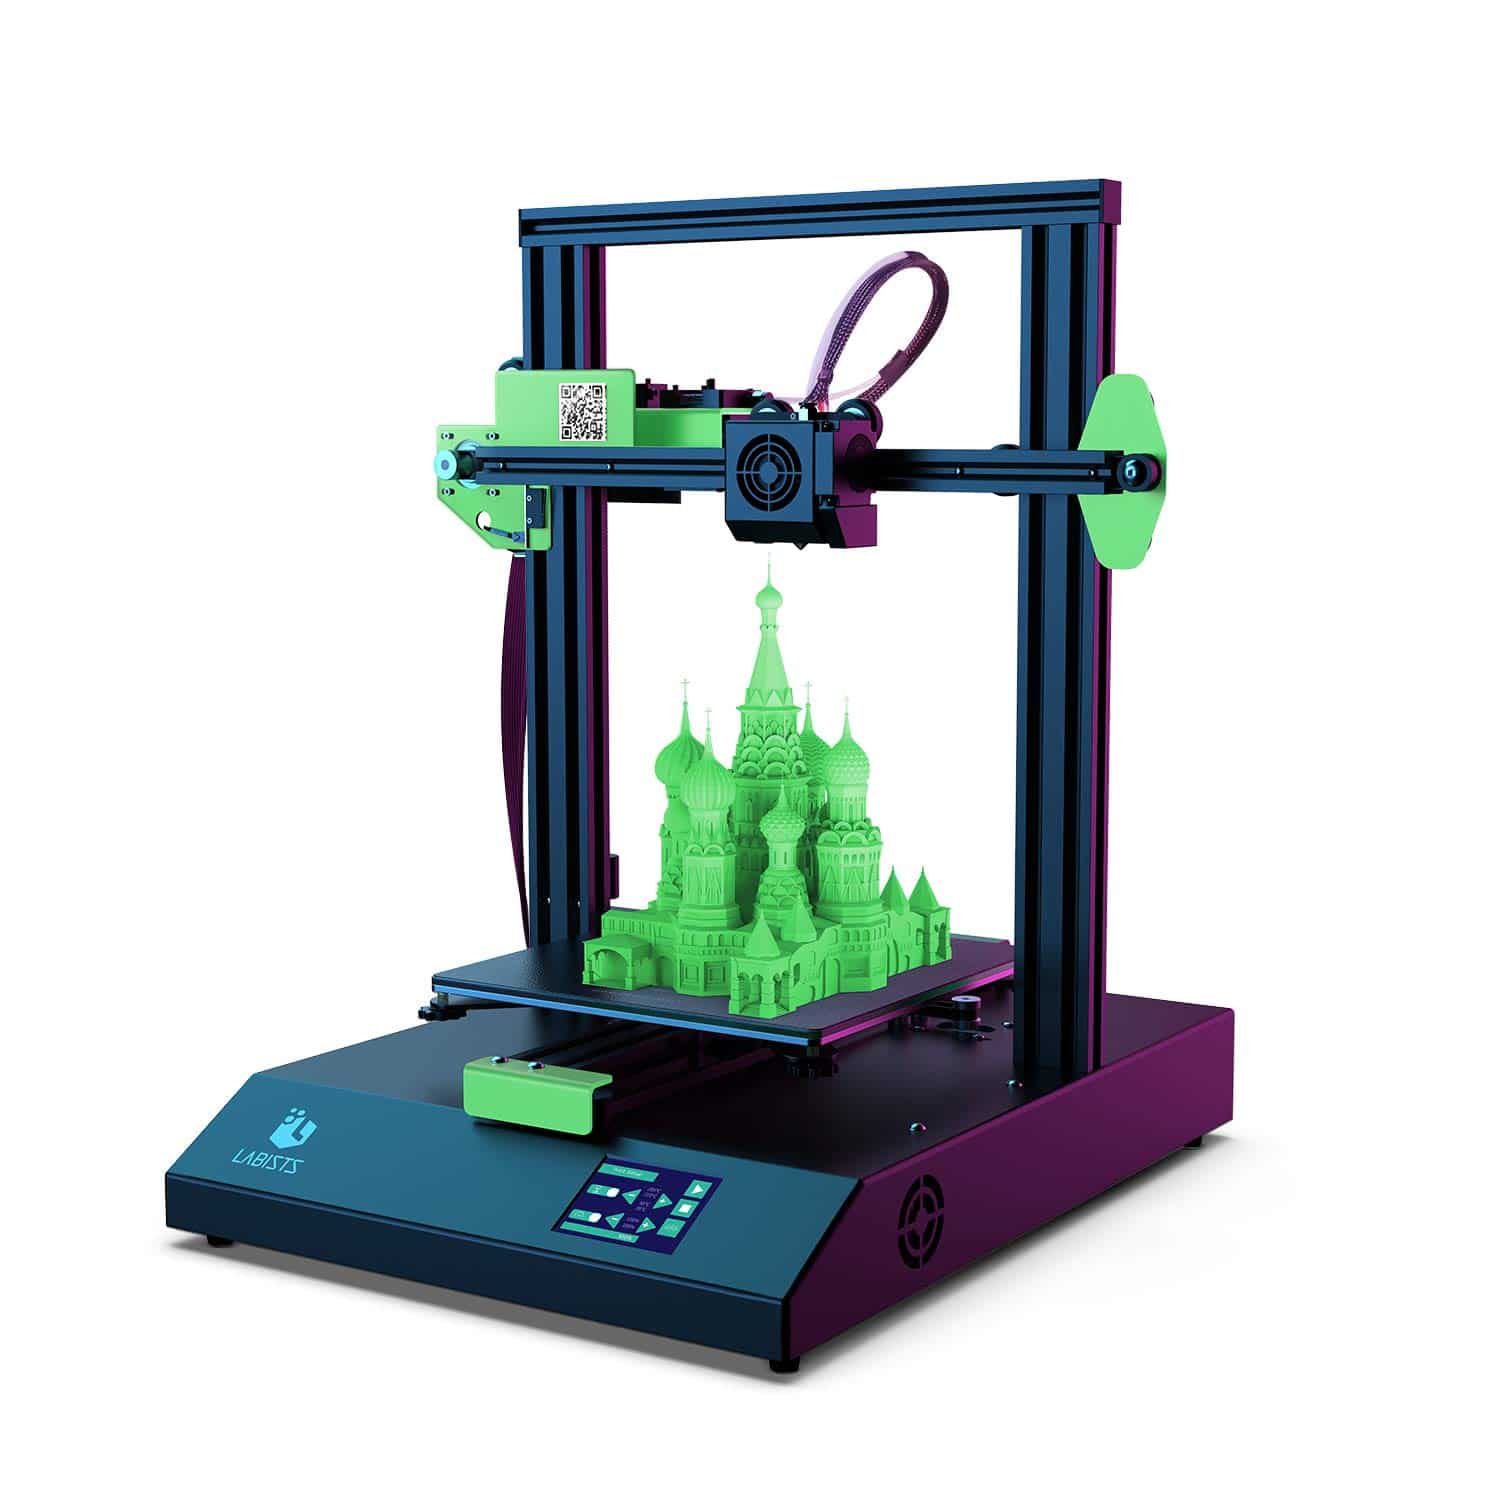 LABISTS Auto Leveling 3D Printer